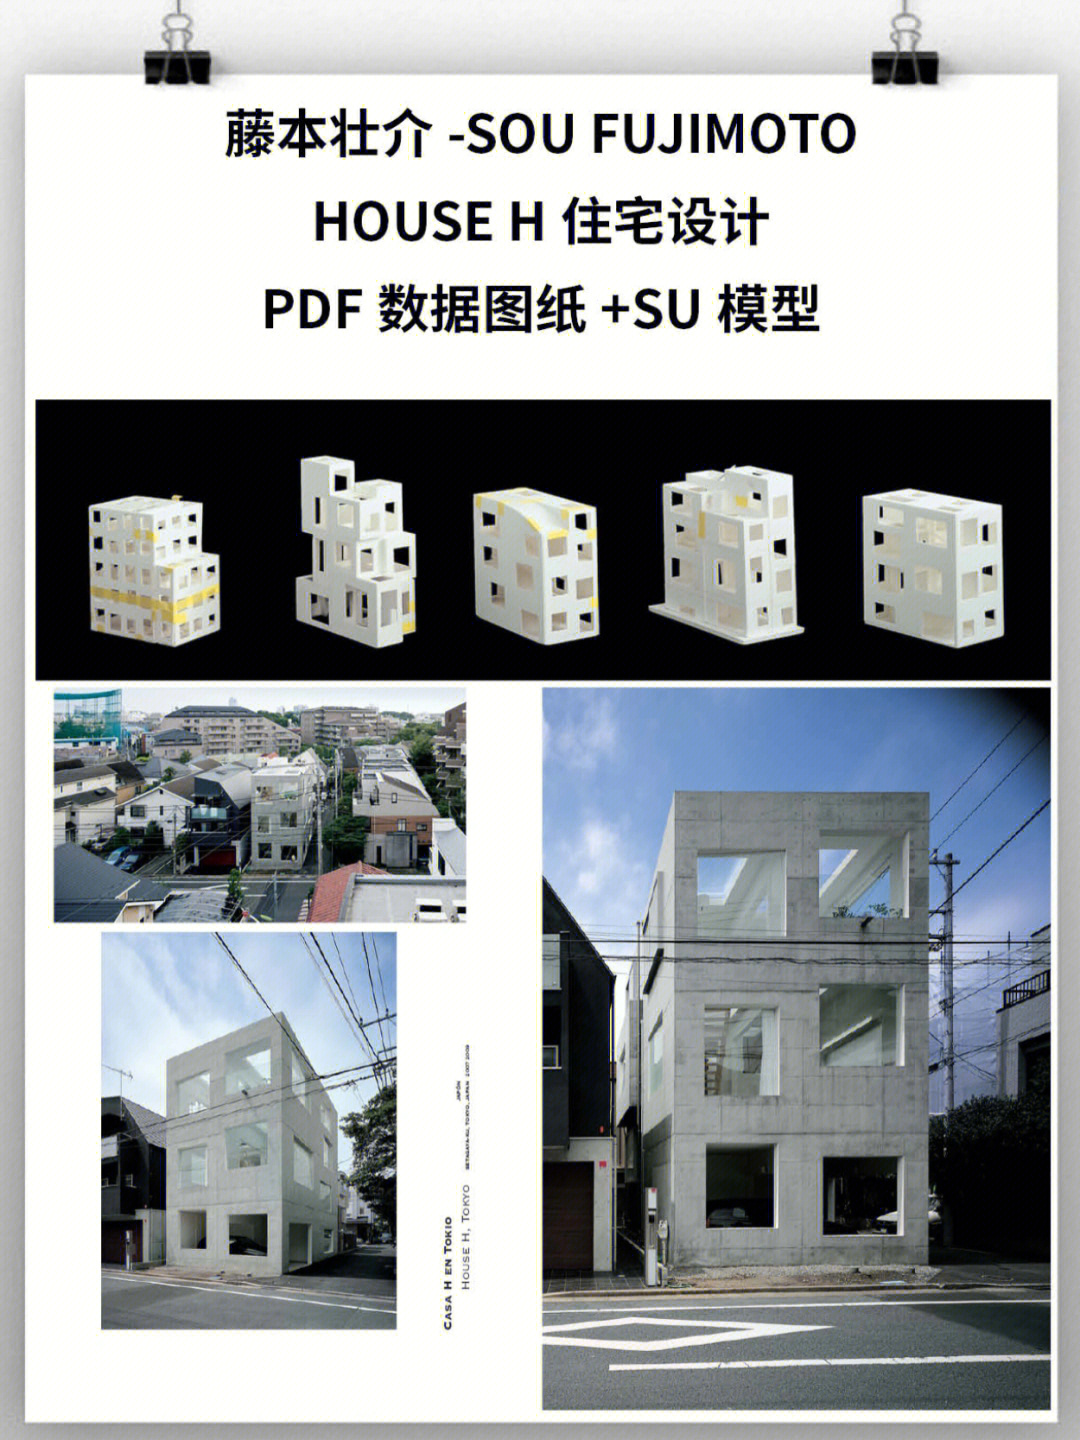 藤本壮介-sou fujimoto-house h住宅设计